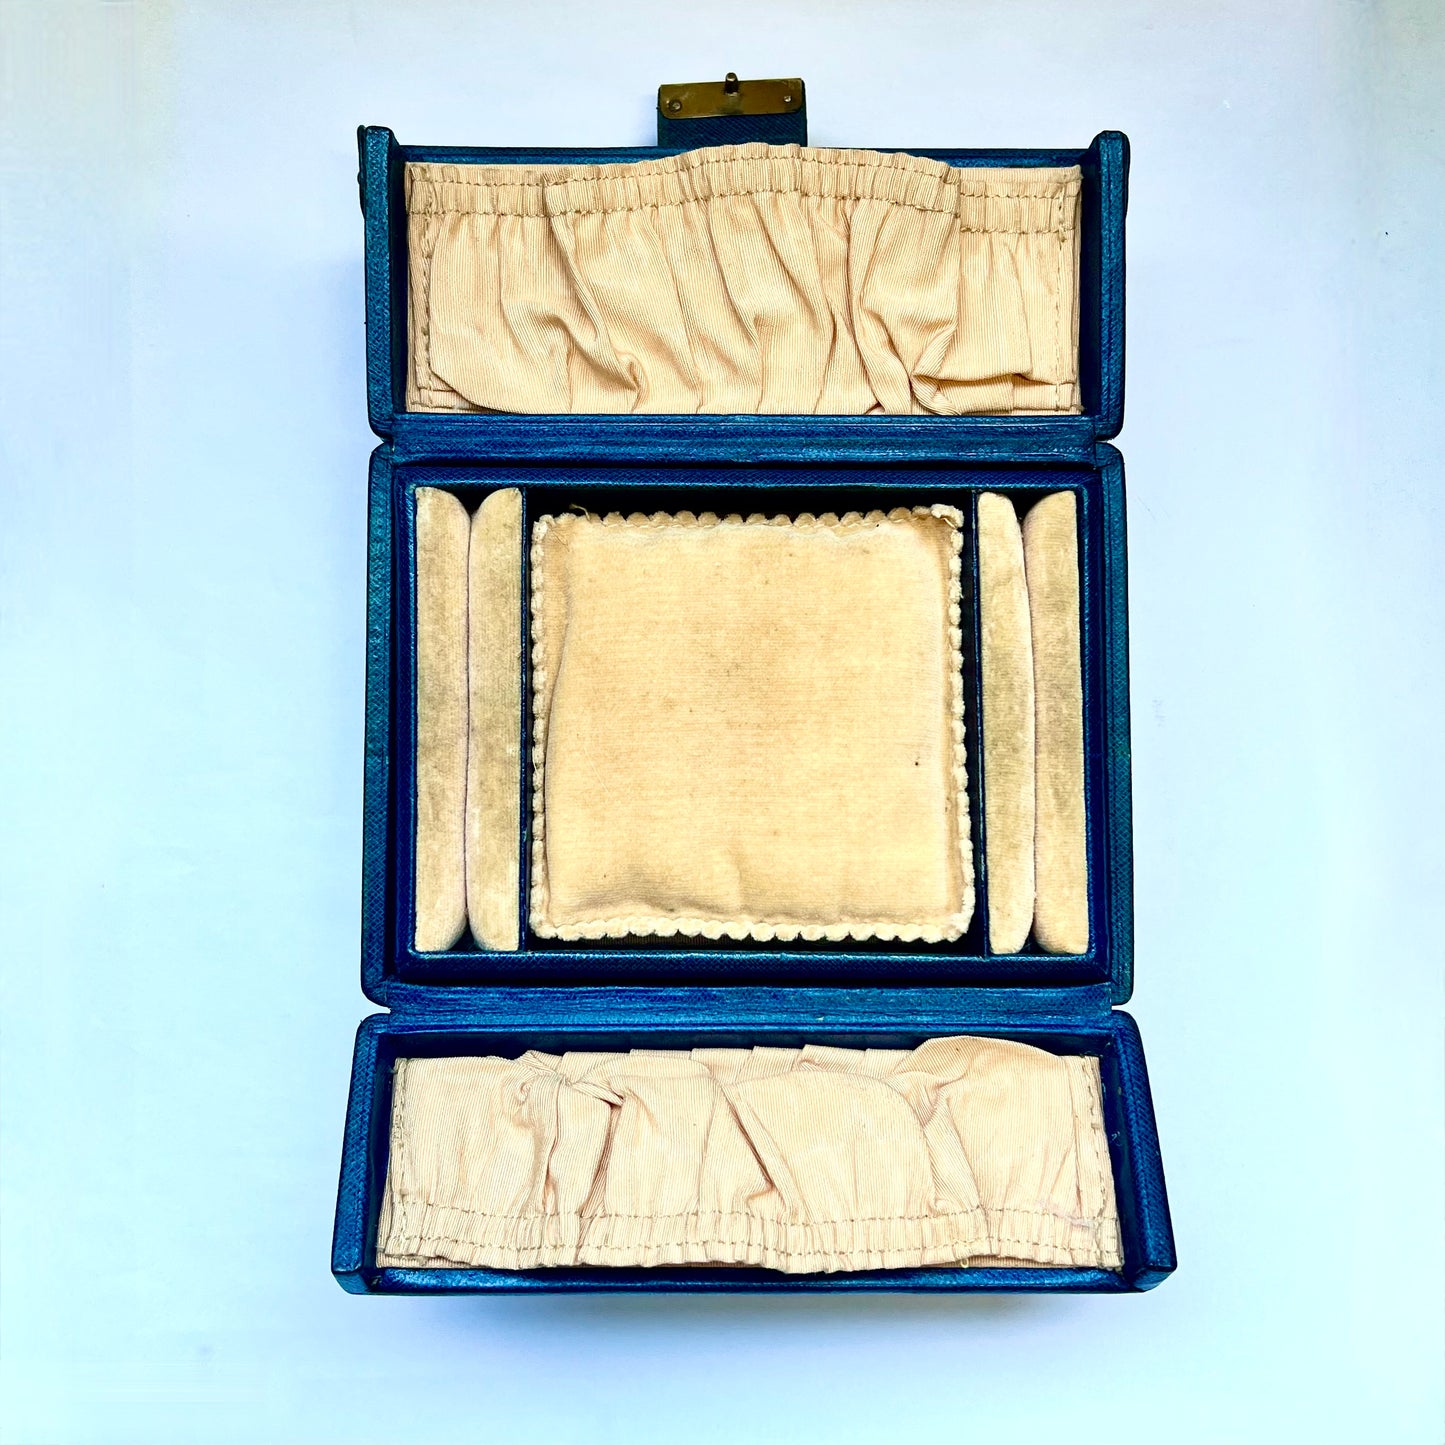 维多利亚晚期至爱德华时期的深绿色皮革珠宝盒，顶部有手柄，配有黄铜装置